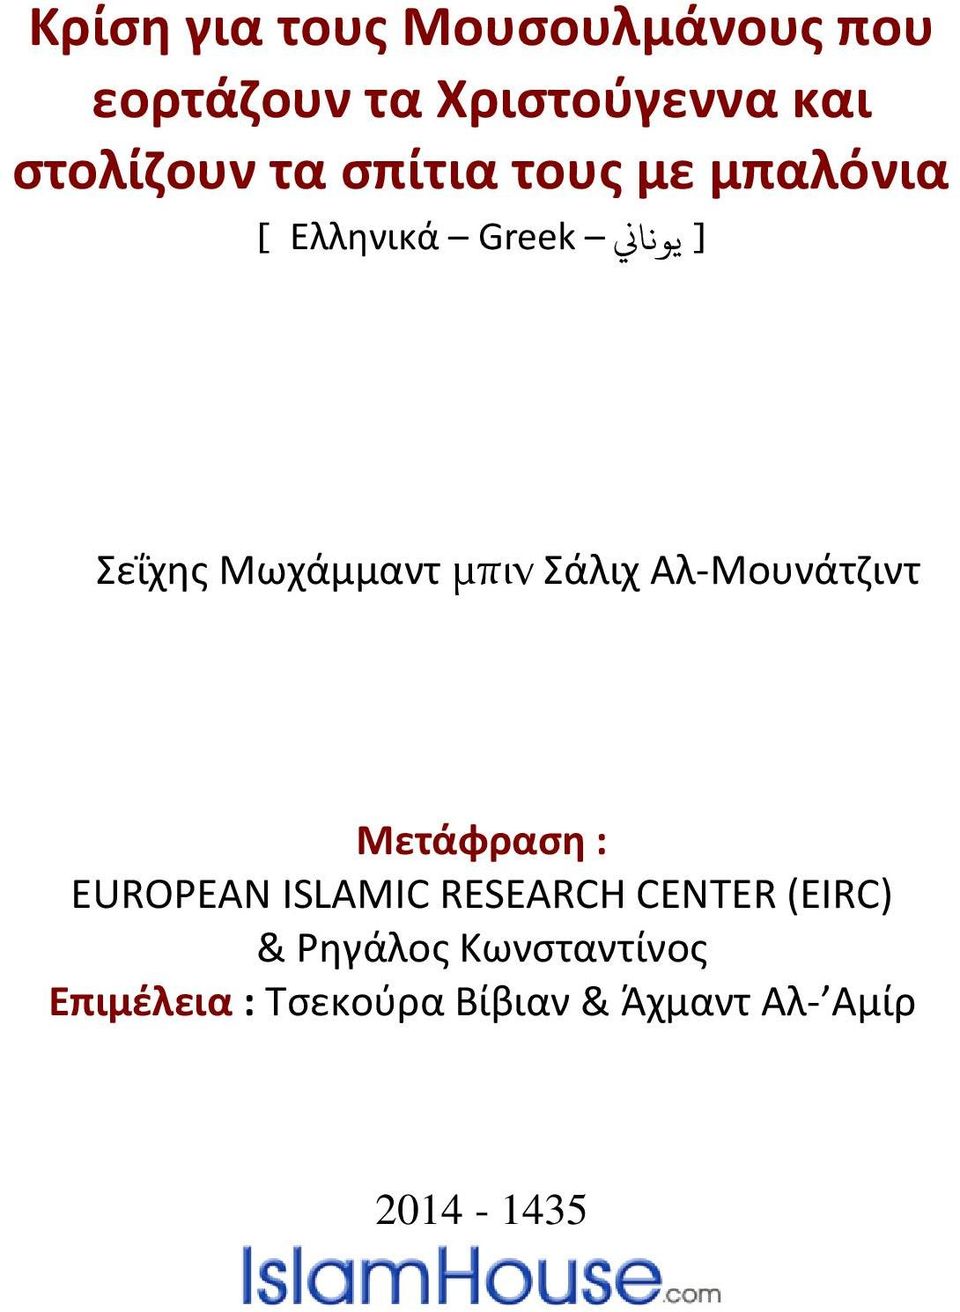 Σάλιχ Αλ-Μουνάτζιντ Μετάφραςη : EUROPEAN ISLAMIC RESEARCH CENTER (EIRC) &